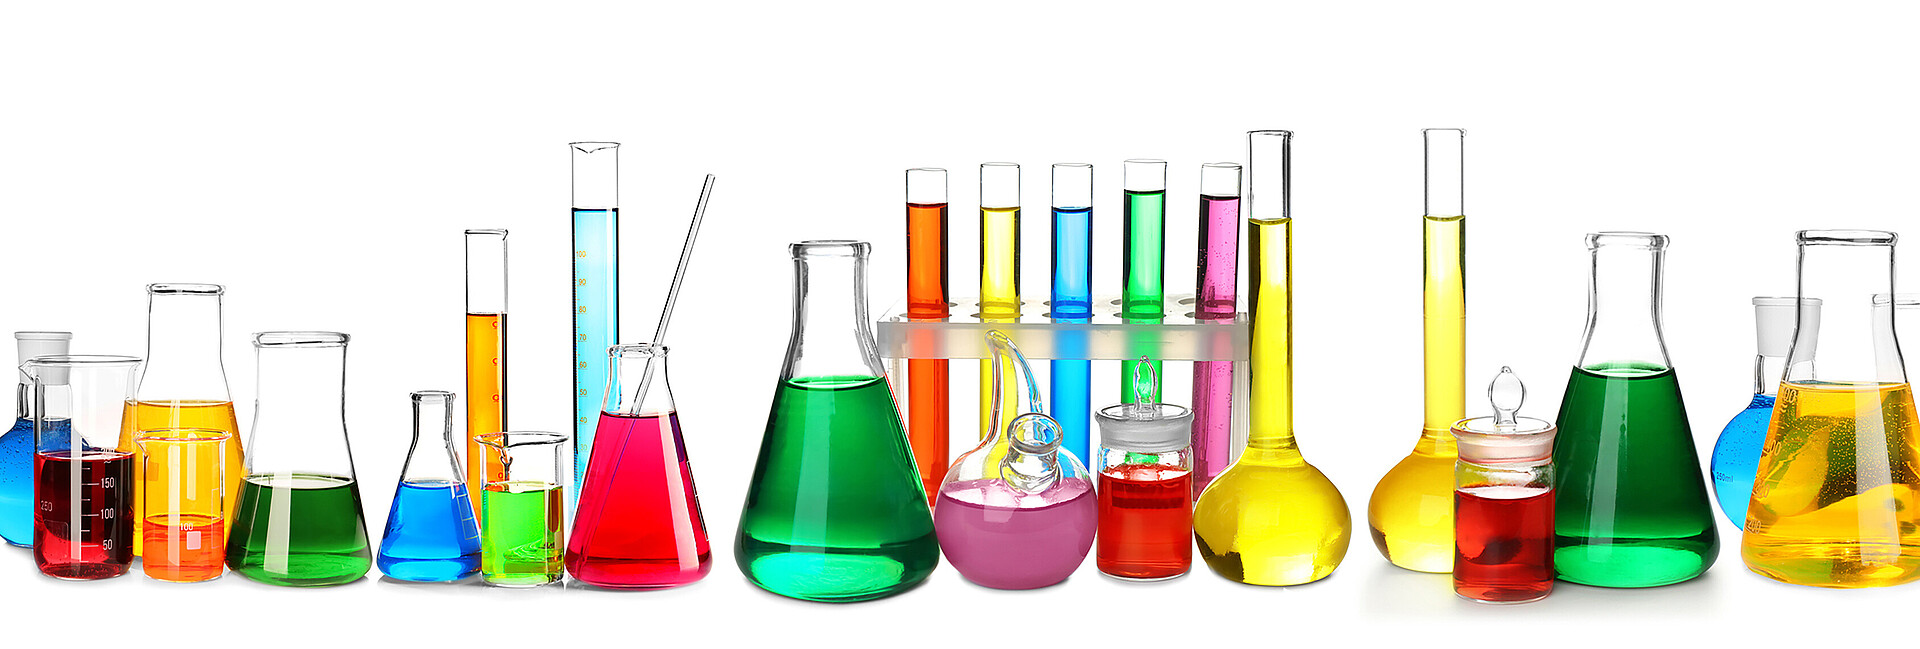 Laborgläser in unterschiedlichen Größen und Farben auf weißem Hintergrund